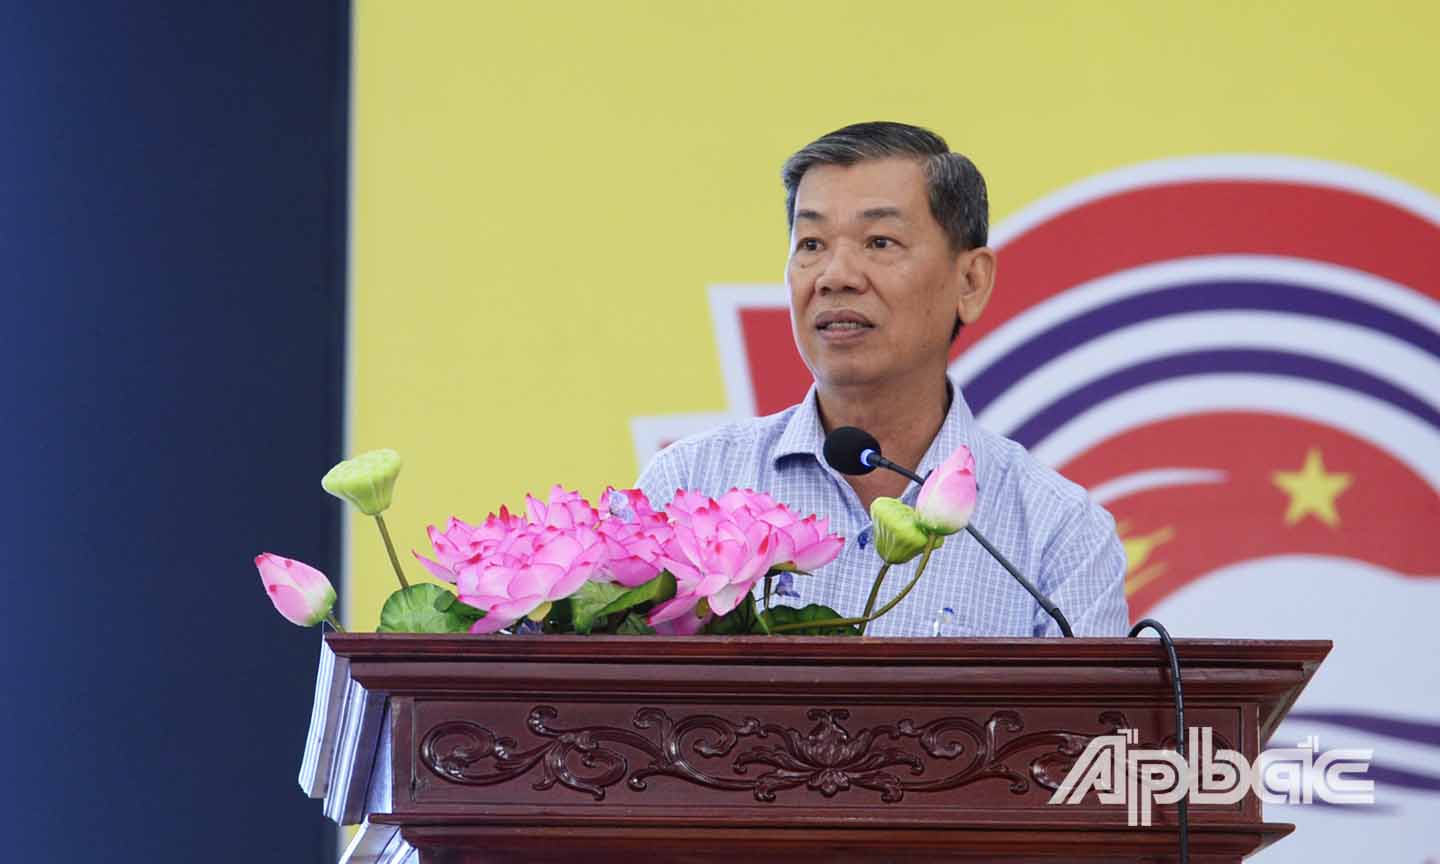 Hội nghị do đồng chí Nguyễn Văn Mẫn, Giám đốc Sở NN&PTNT chủ trì.